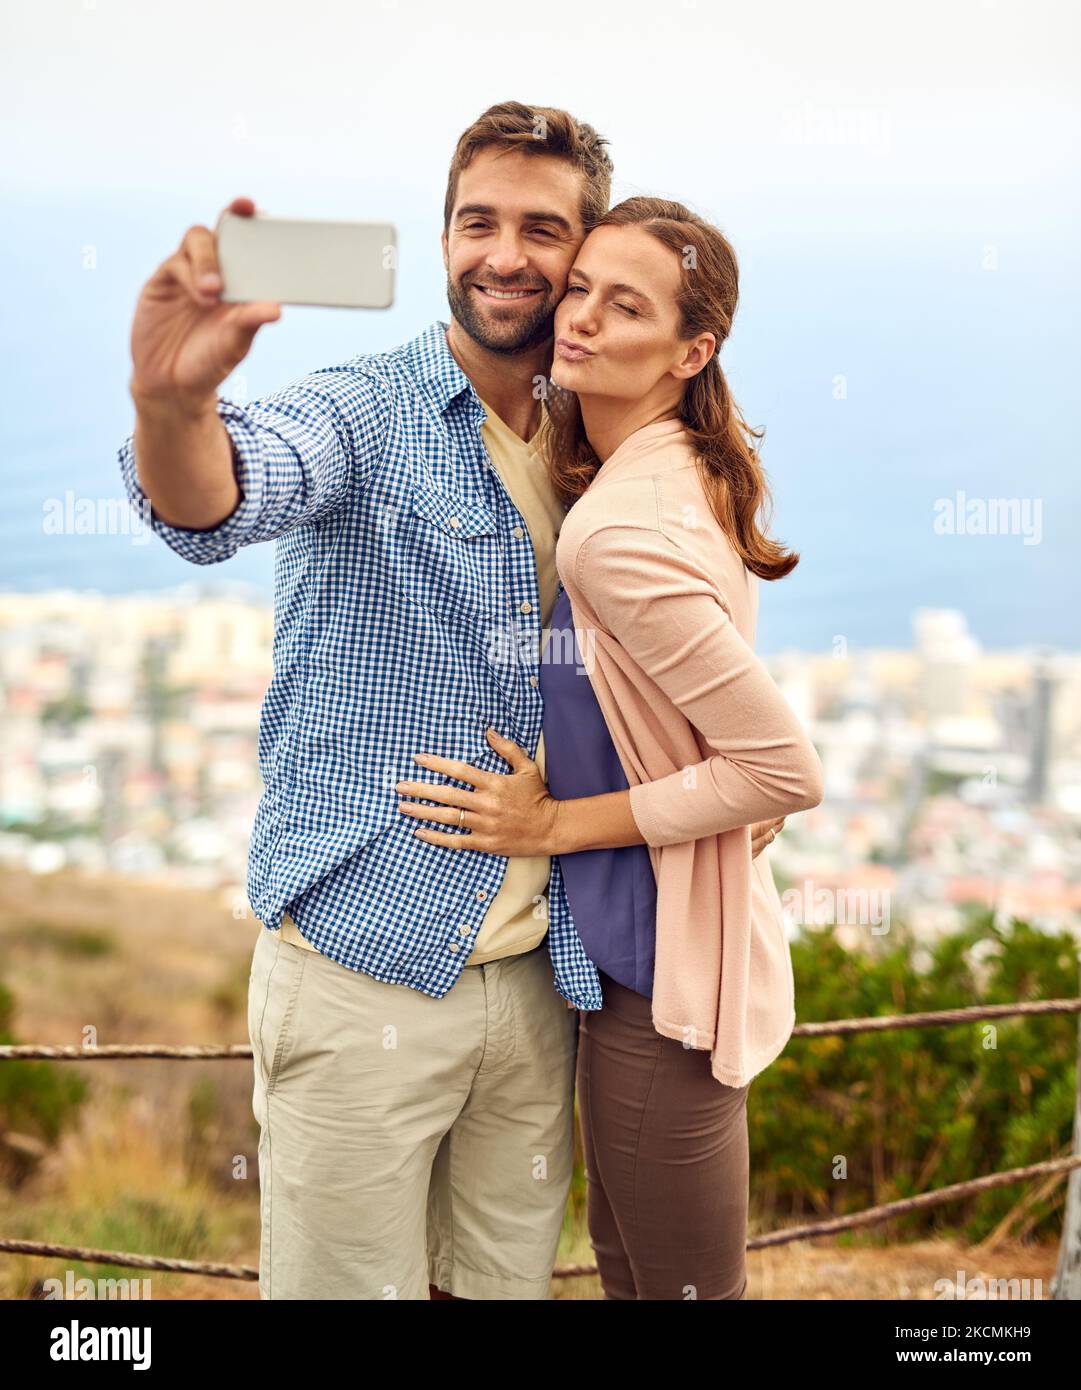 Partage de l'amour des selfies. Un couple affectueux qui prend des selfies à l'extérieur. Banque D'Images